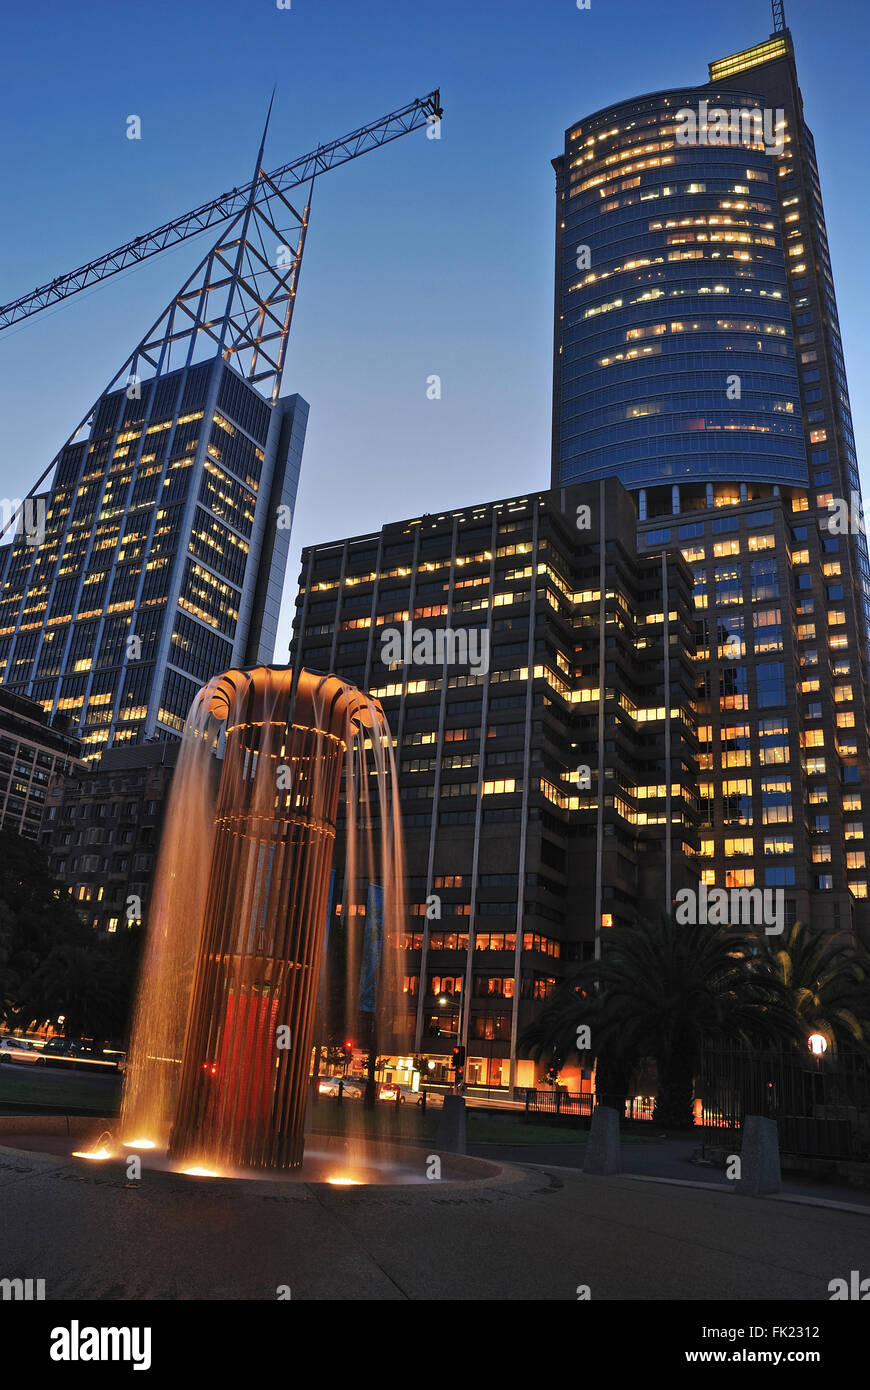 Sydney cbd gratte-ciel avec la lumière dans les fenêtres et fontaine éclairée Banque D'Images